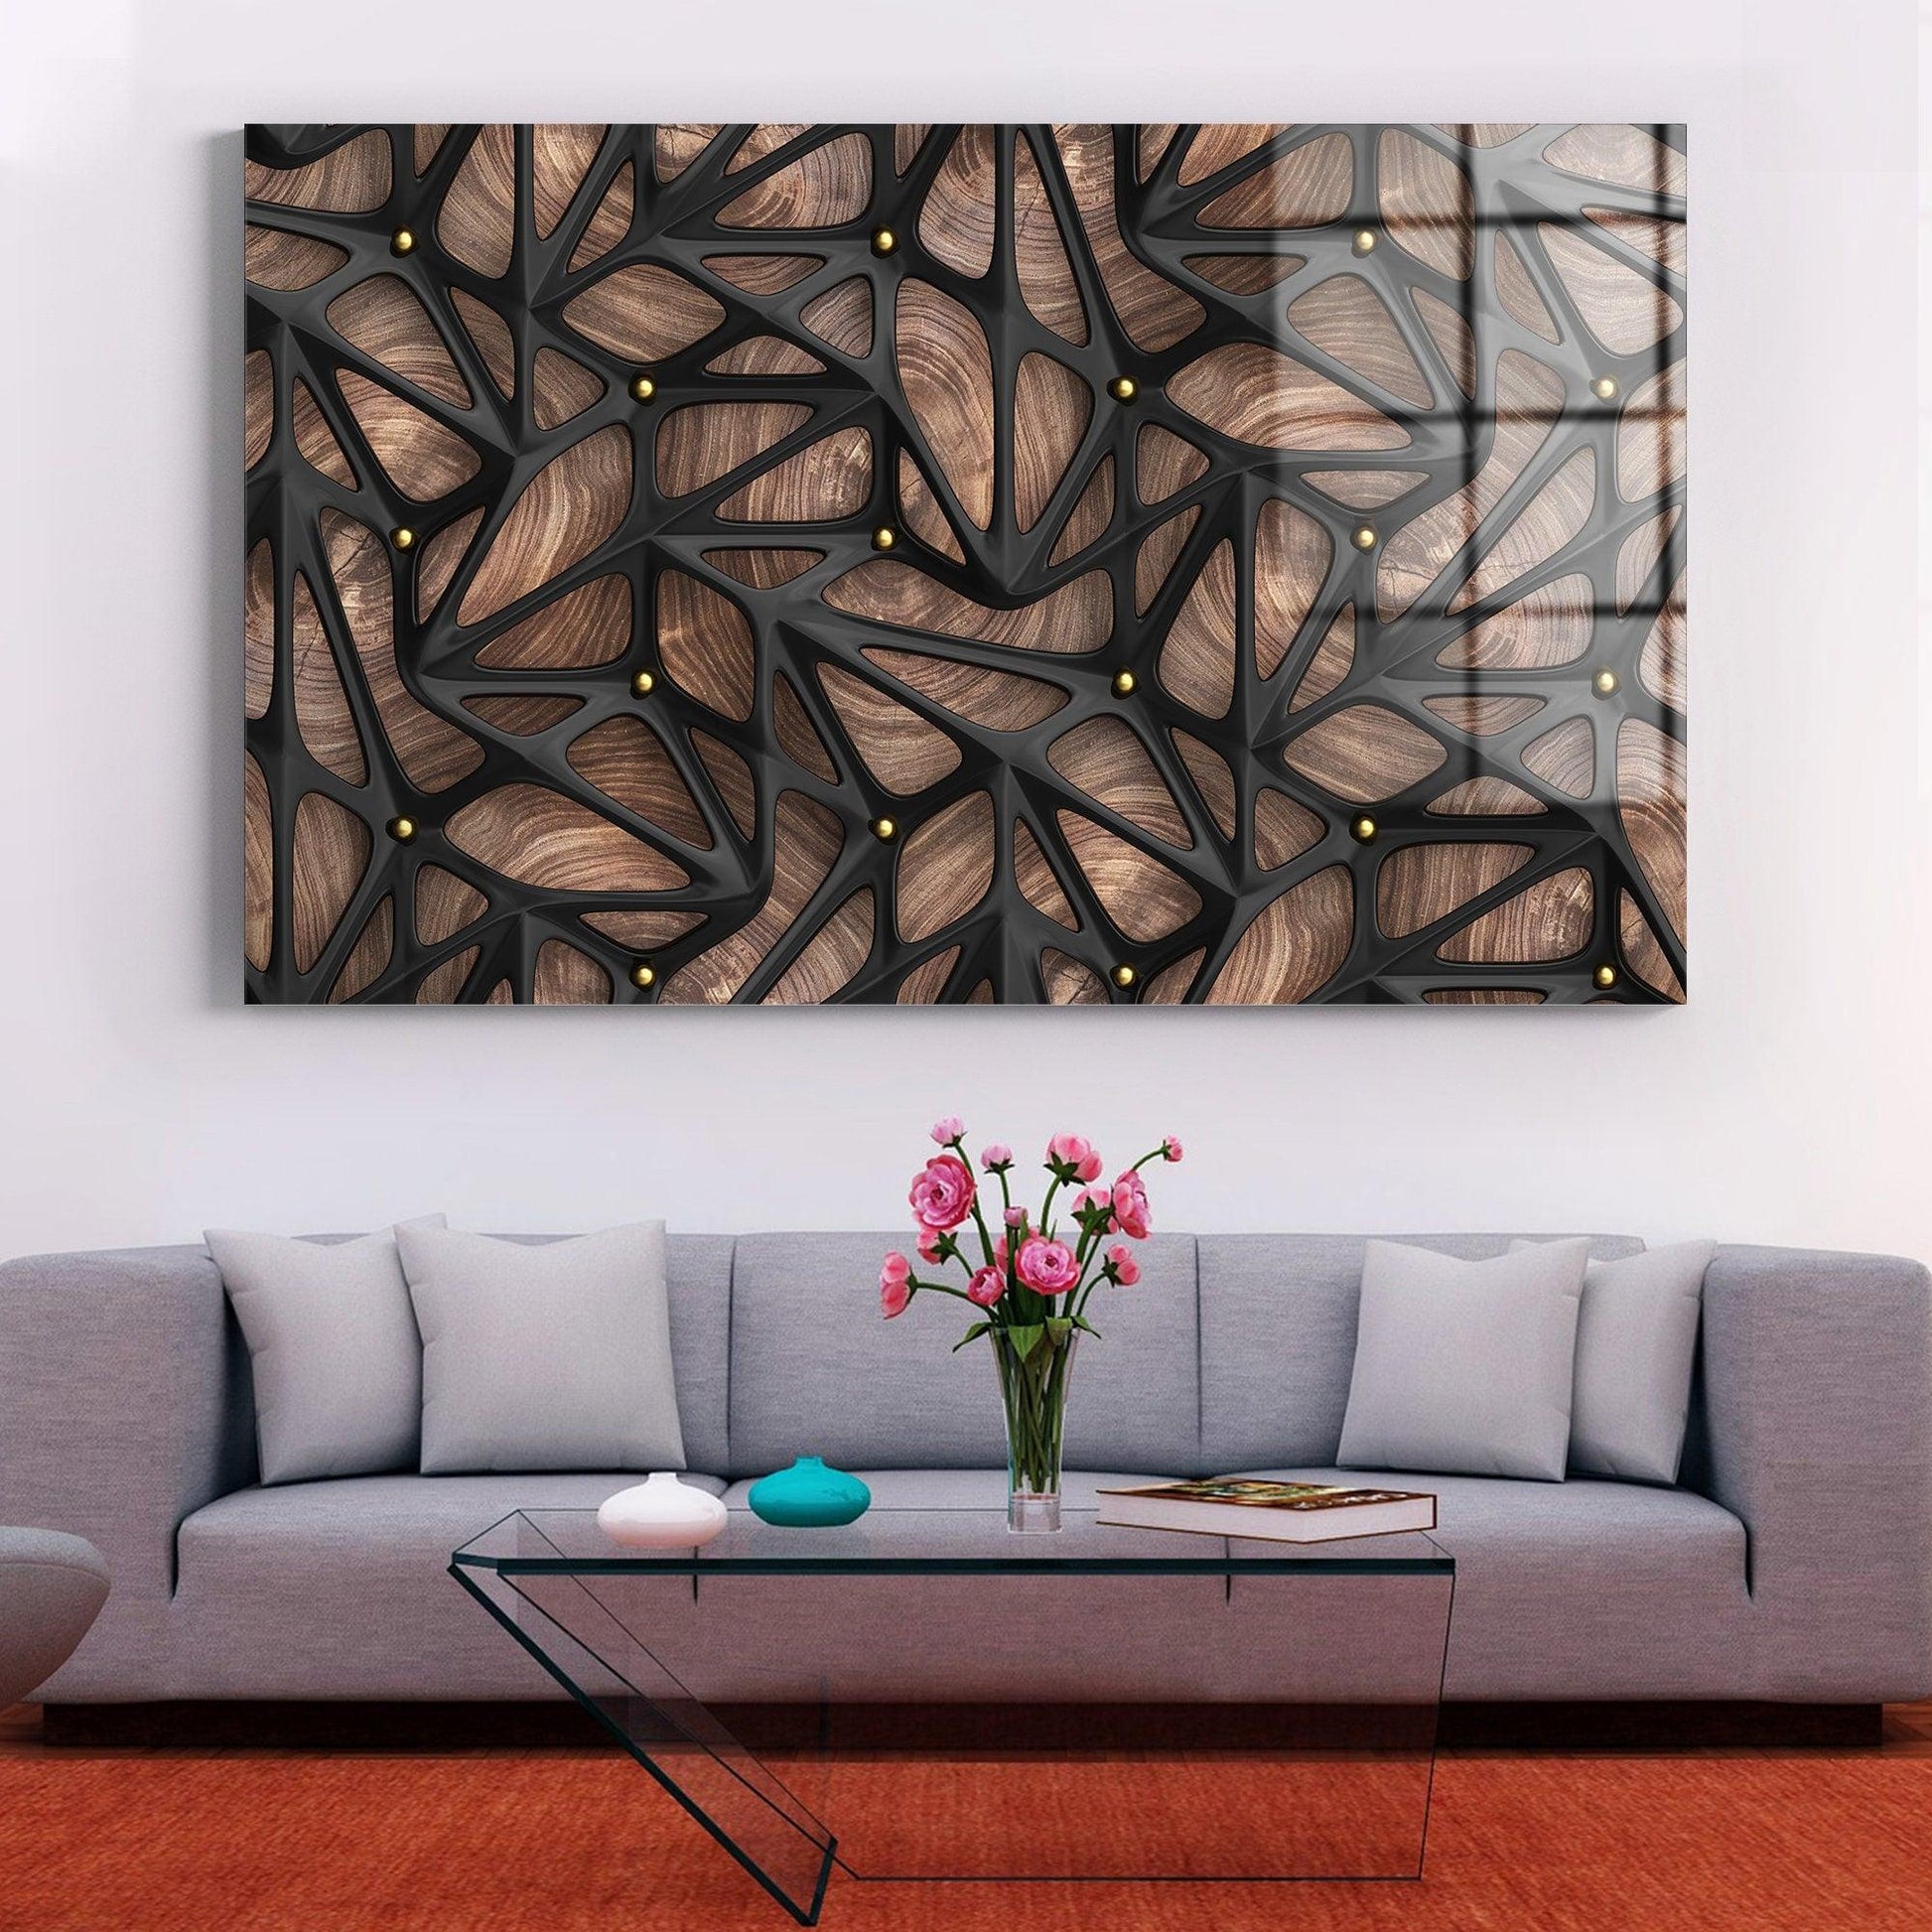 Abstract 3D effect glass wall art| Luxury wooden texture canvas print Art, 3d glass wall decor, wood textured canvas, large wood wall art